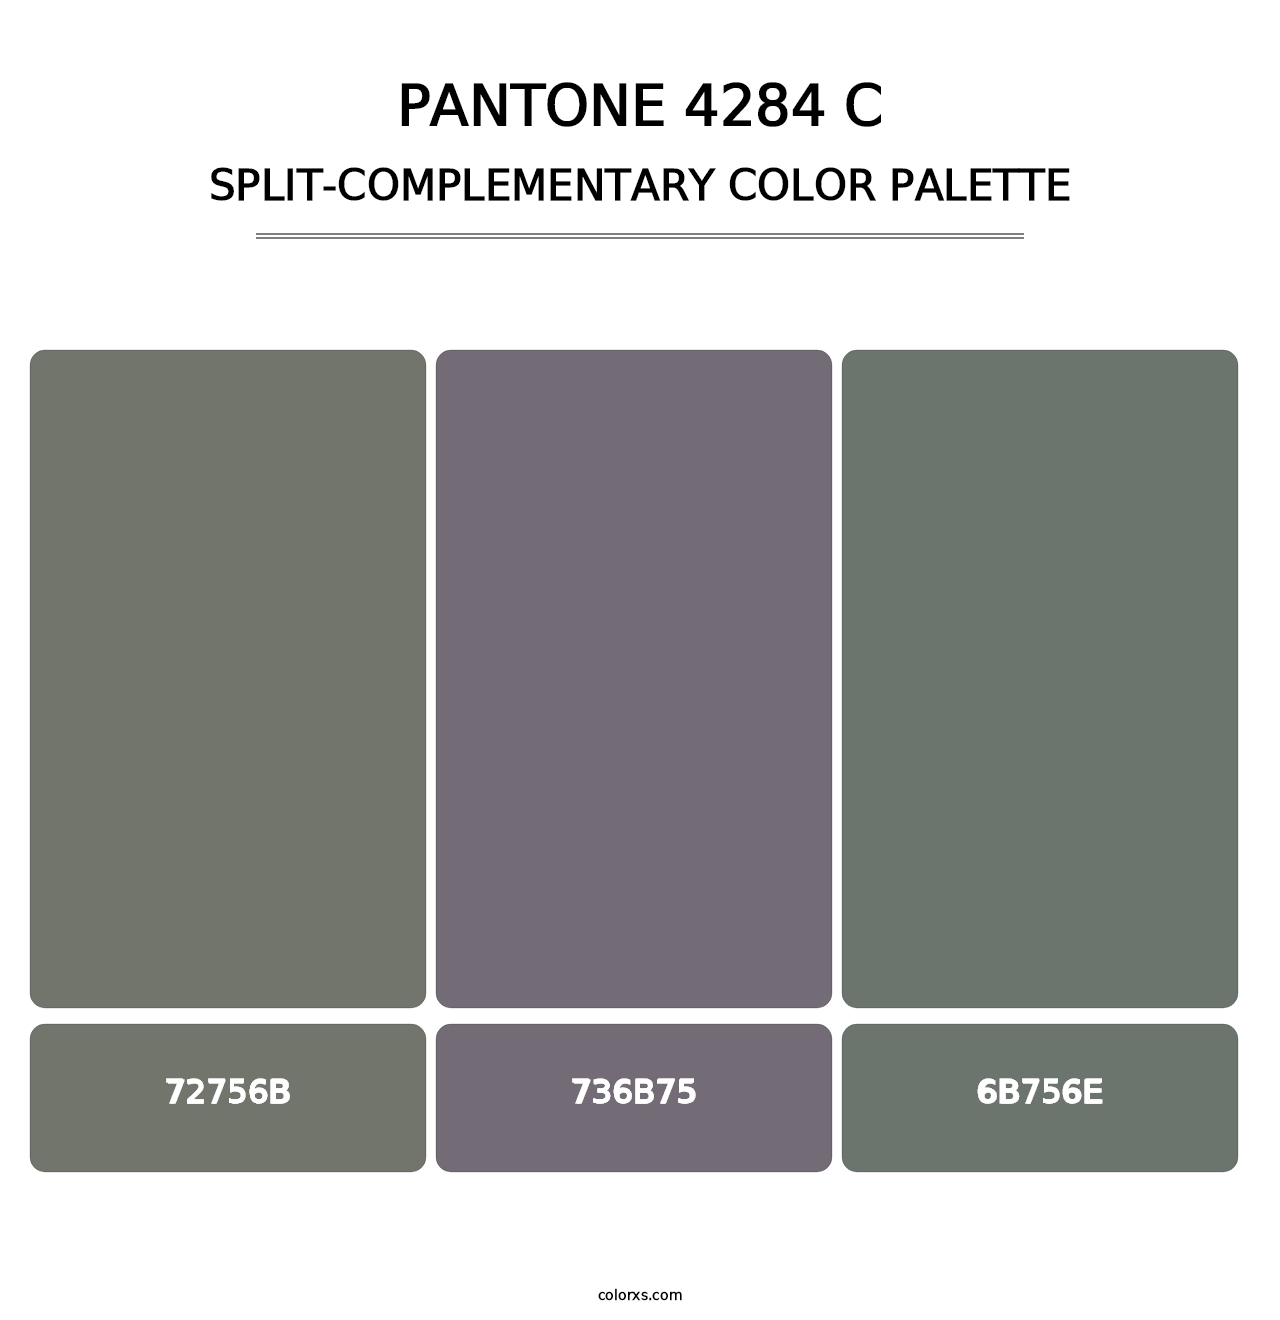 PANTONE 4284 C - Split-Complementary Color Palette